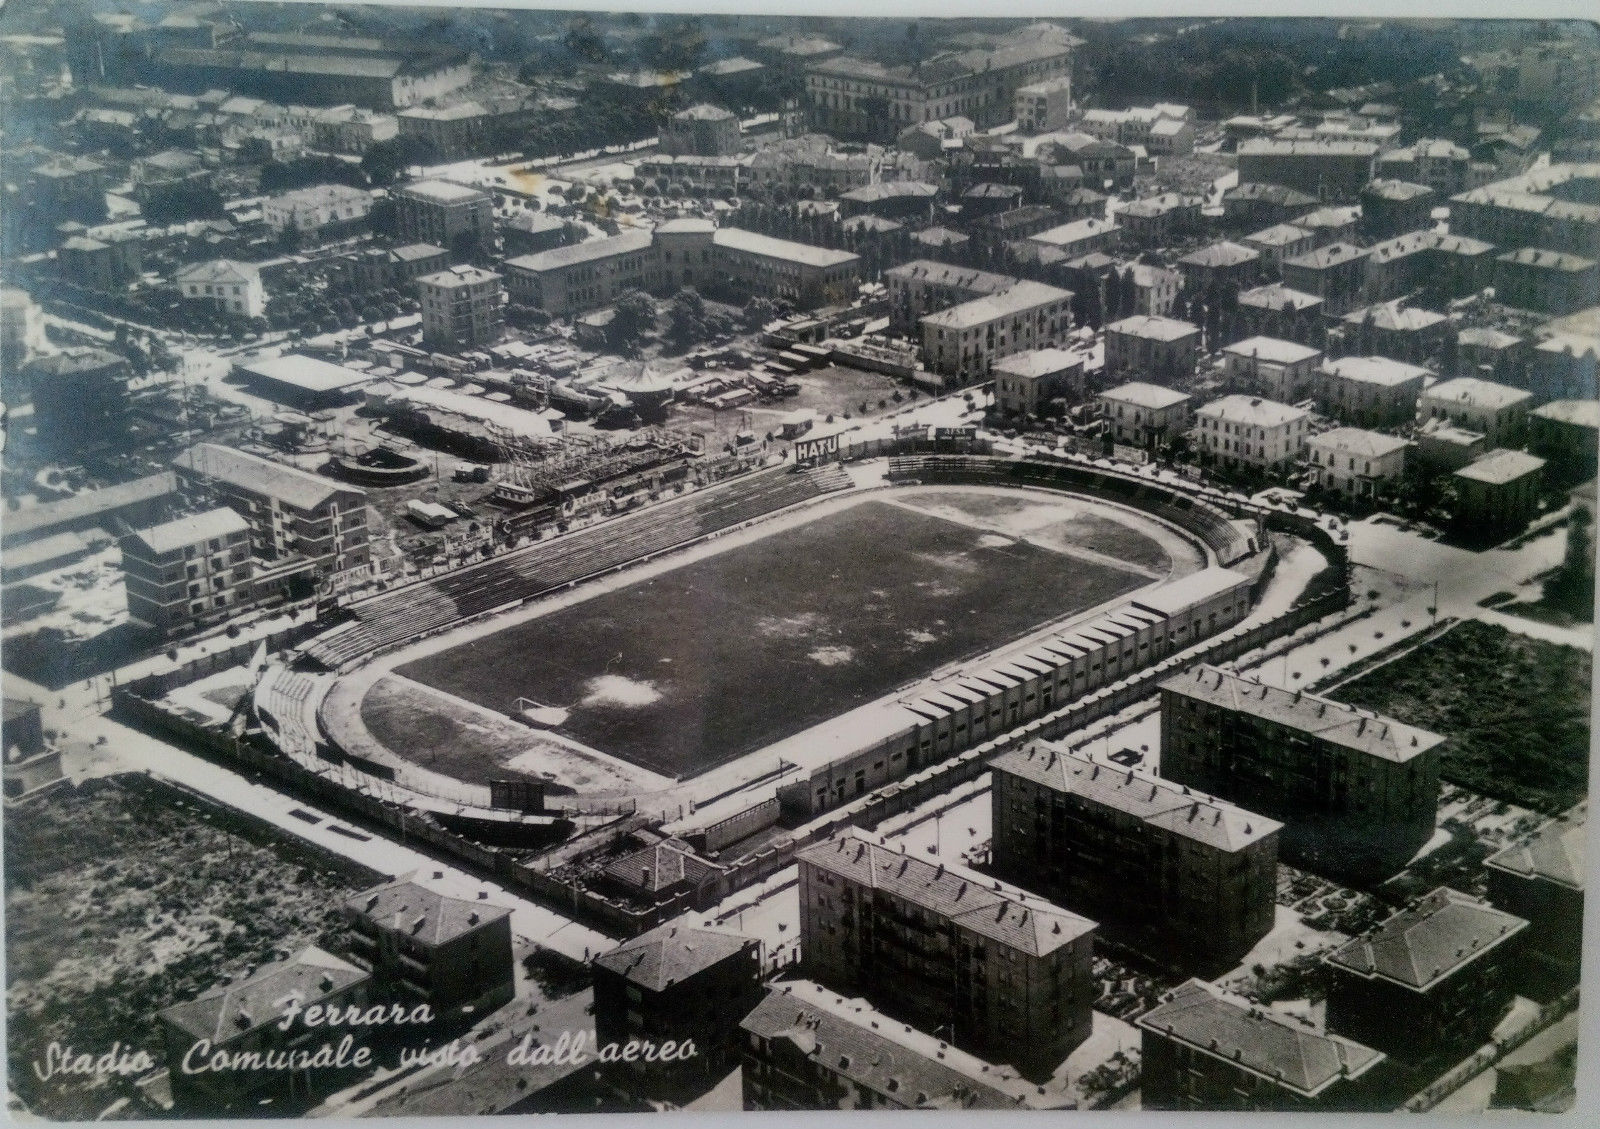 Stadio Comunale di Ferrara